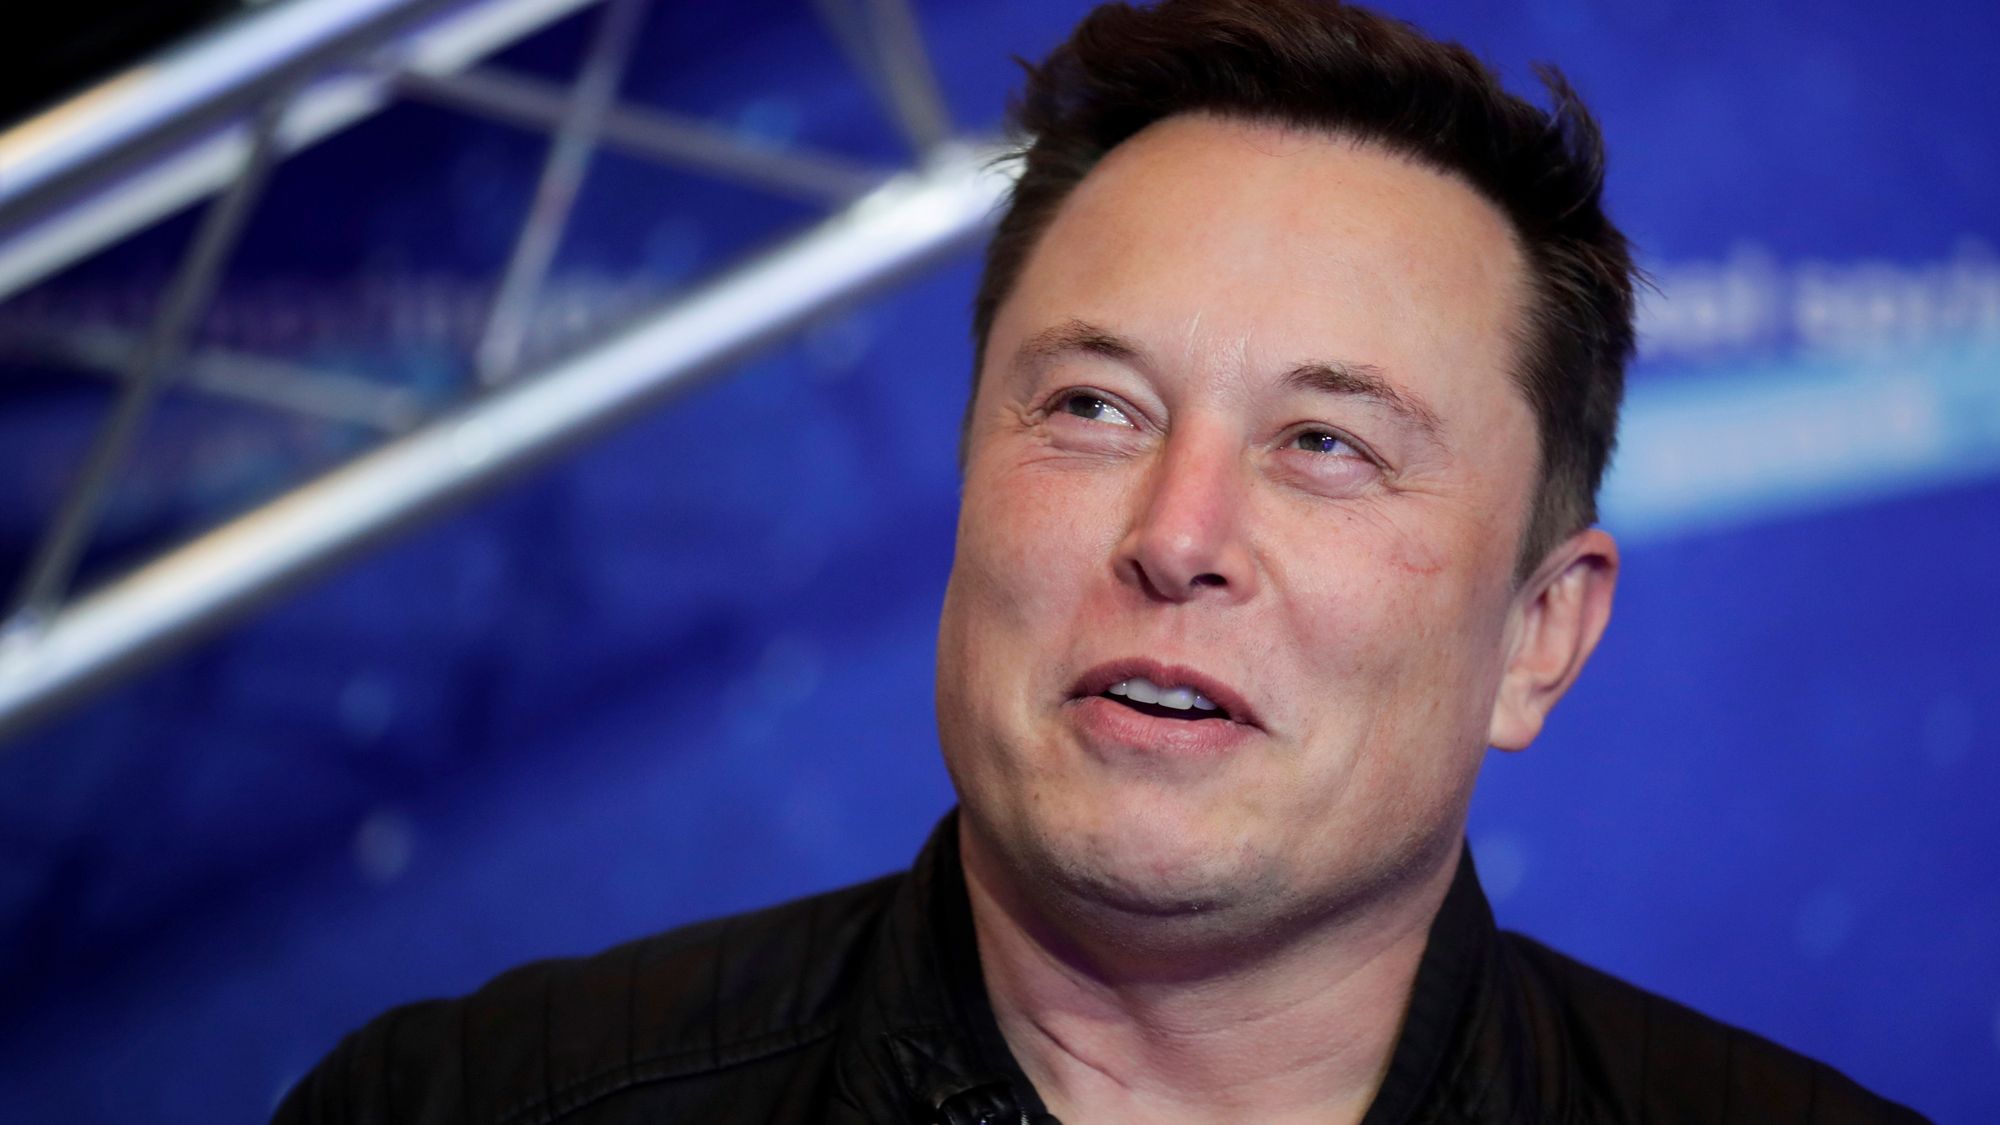 Nå skal Elon Musk slette Twitter-kontoen din om du ikke bruker den - Digi.no